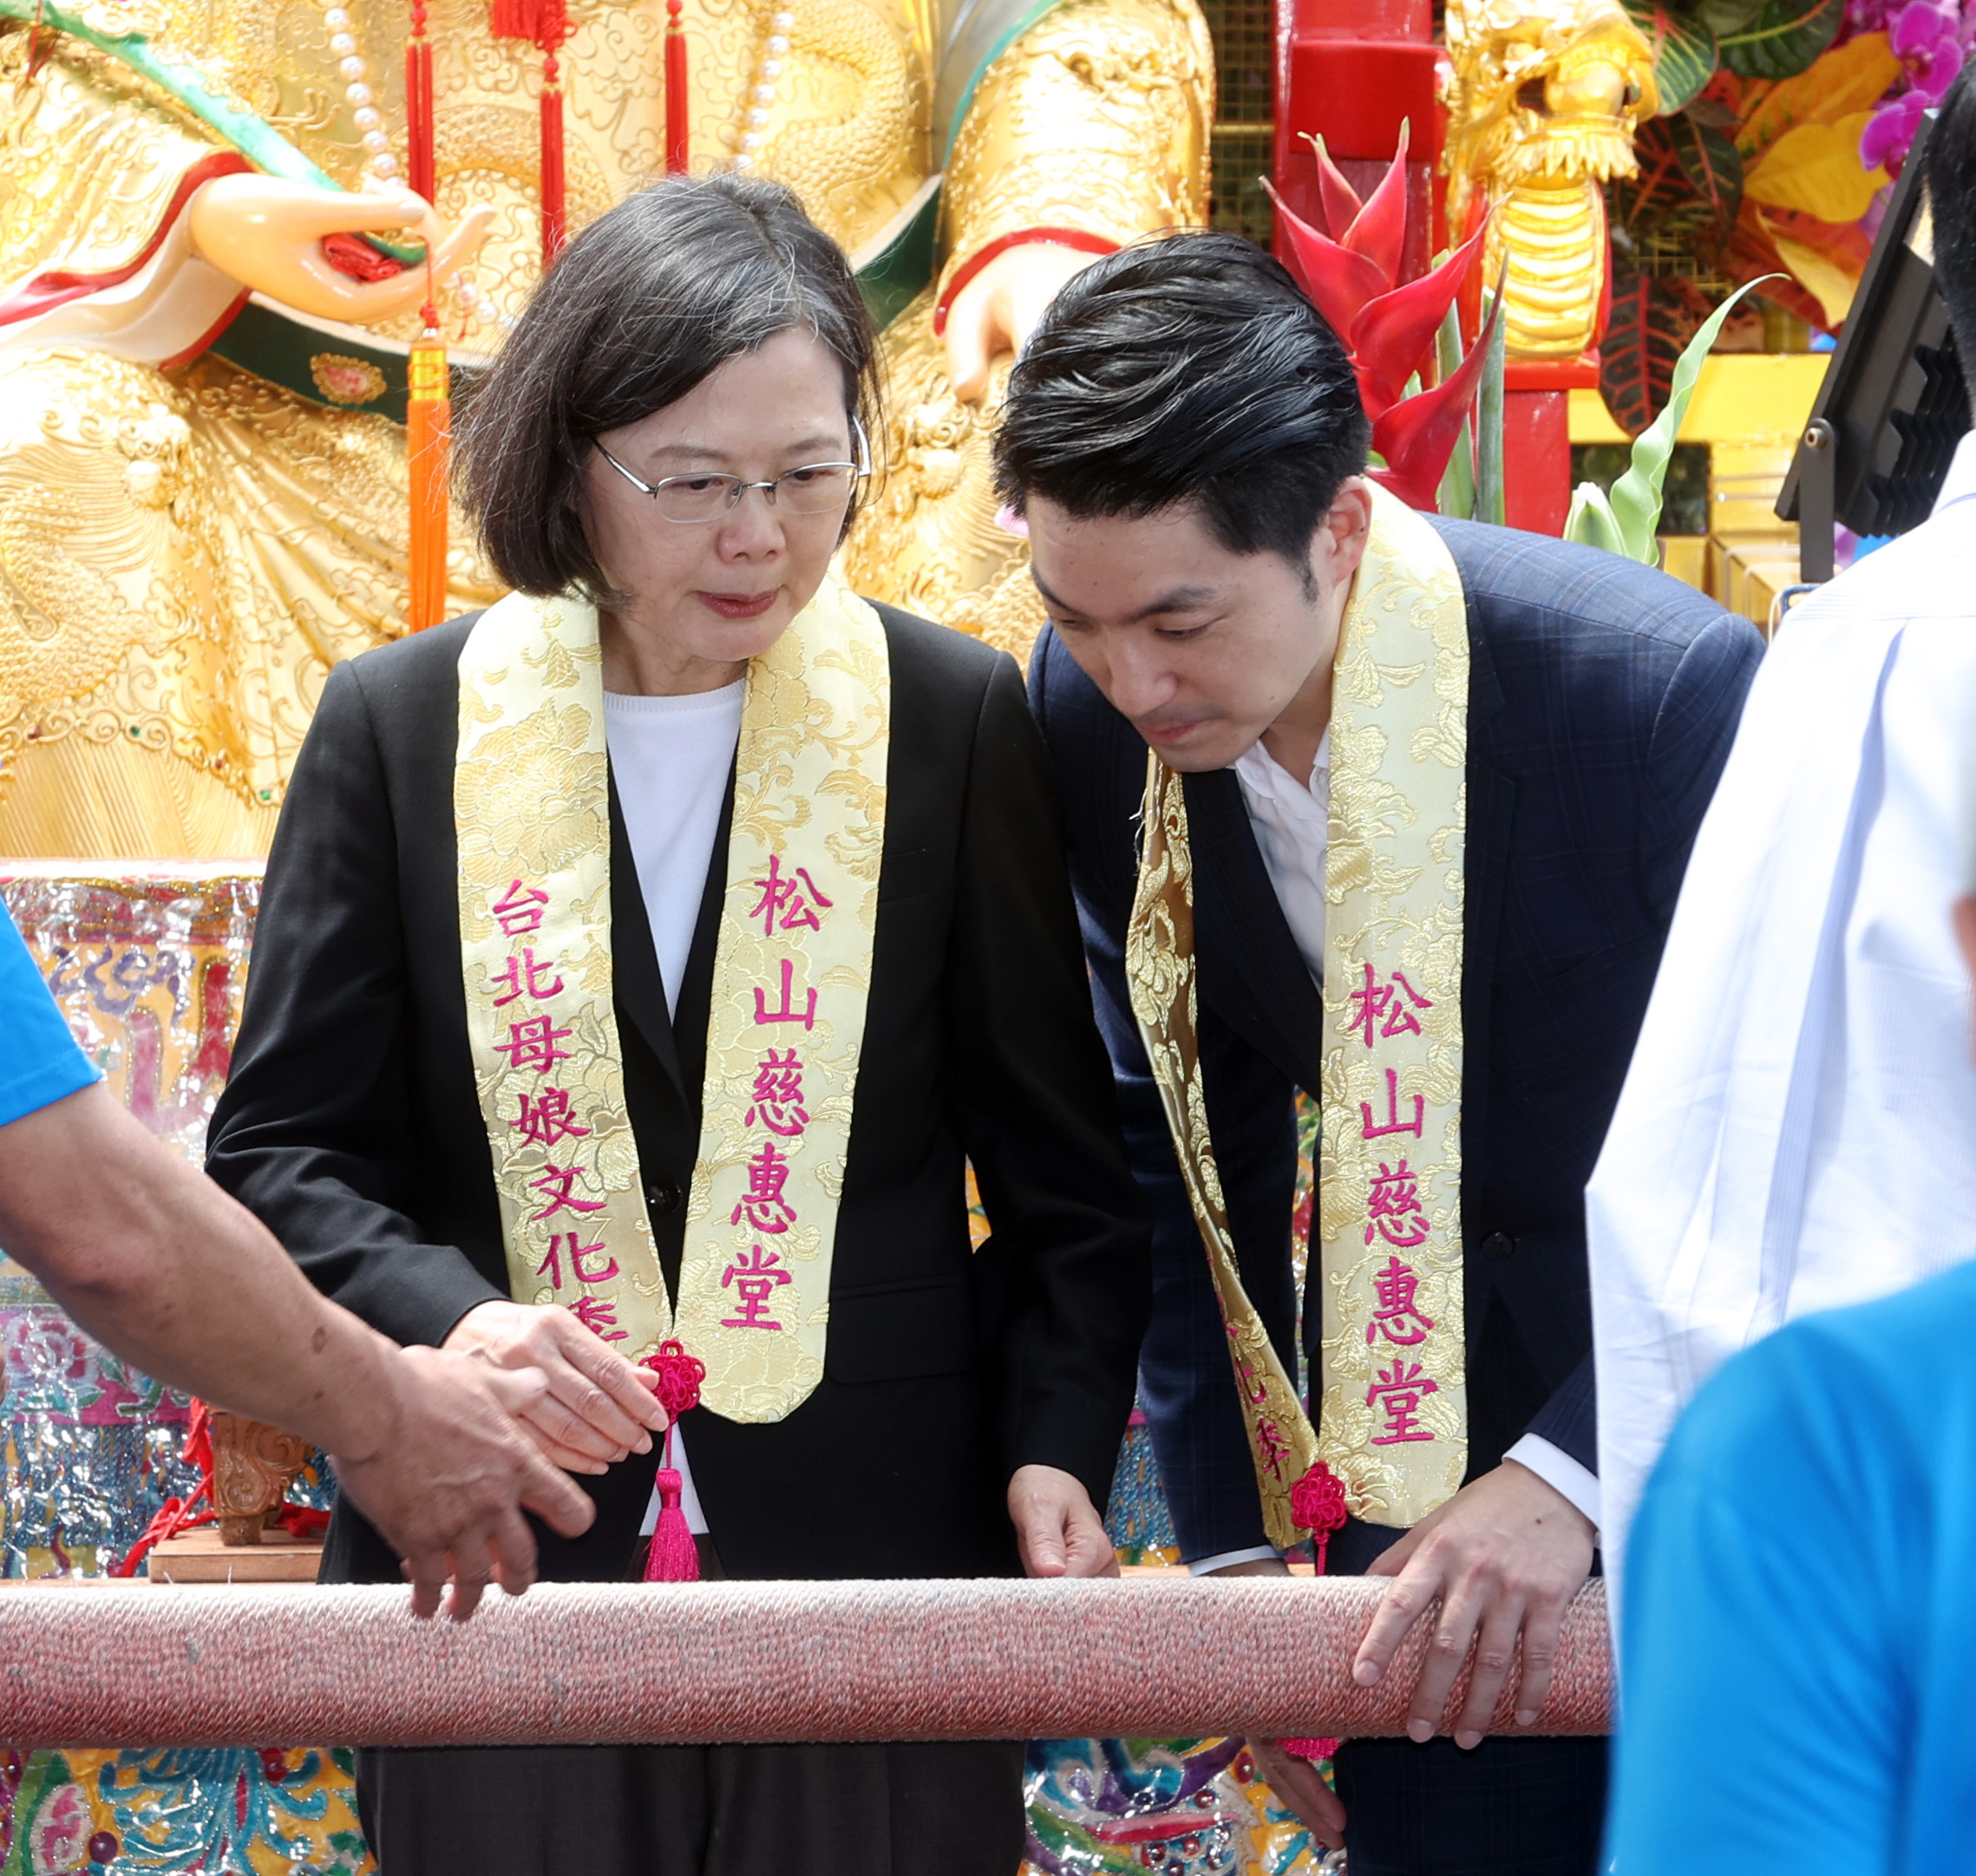 蔡英文总统（左）上午和台北市长蒋万安（右），出席台北松山慈惠堂母娘文化季，两人起轿前交换意见。记者曾吉松／摄影